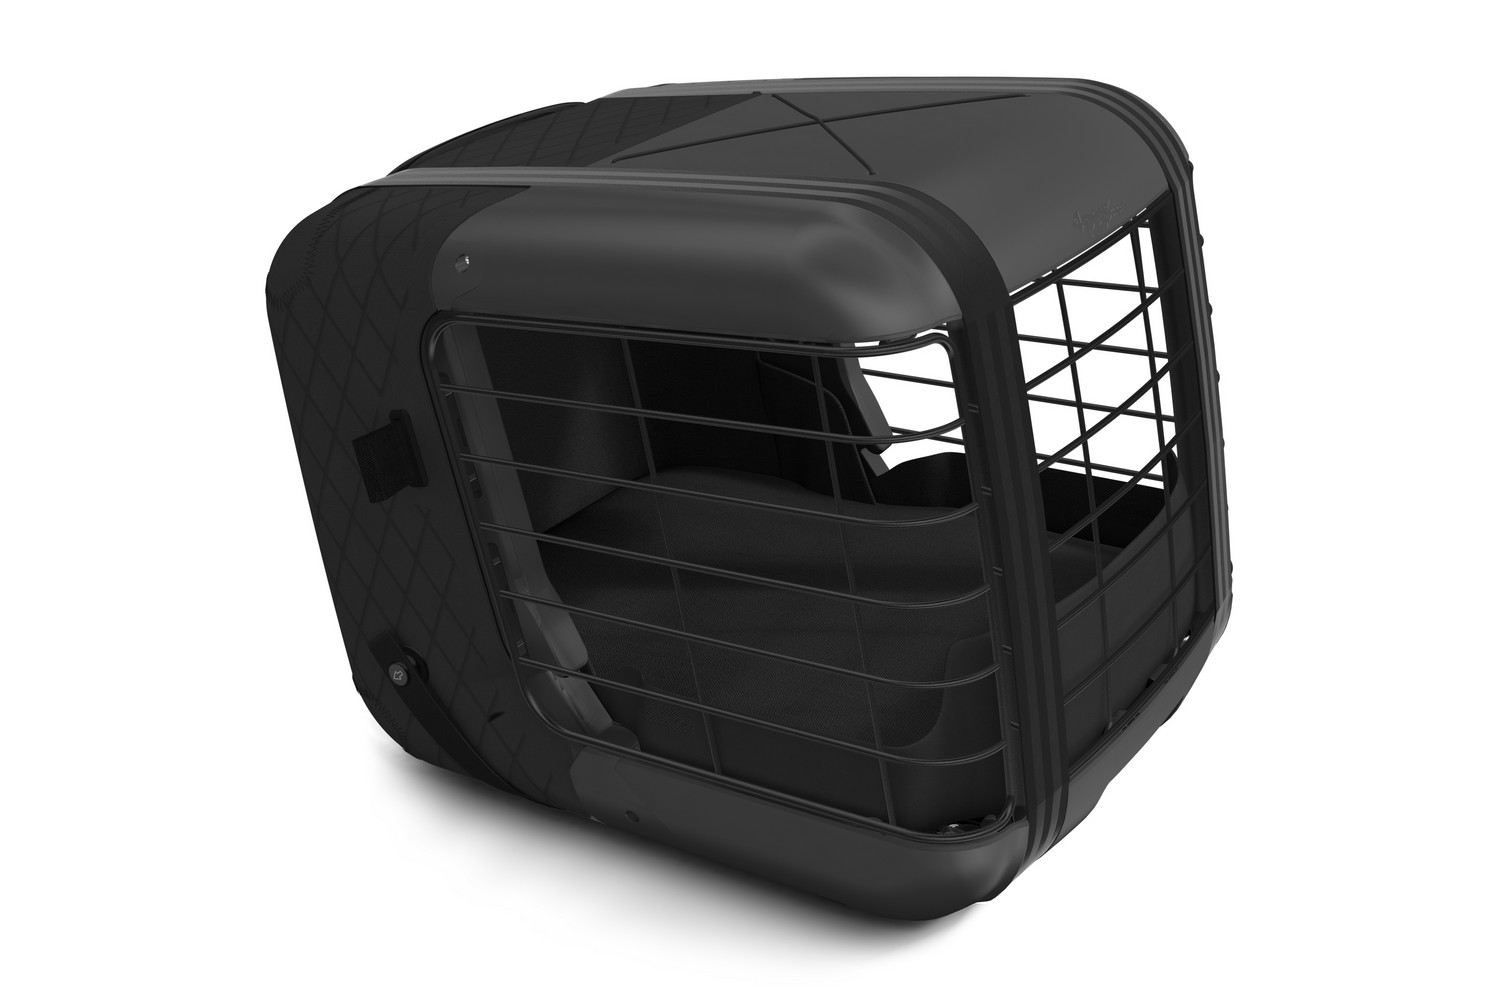 Caisse de transport pour chien ou chat 4pets Caree - Black Series